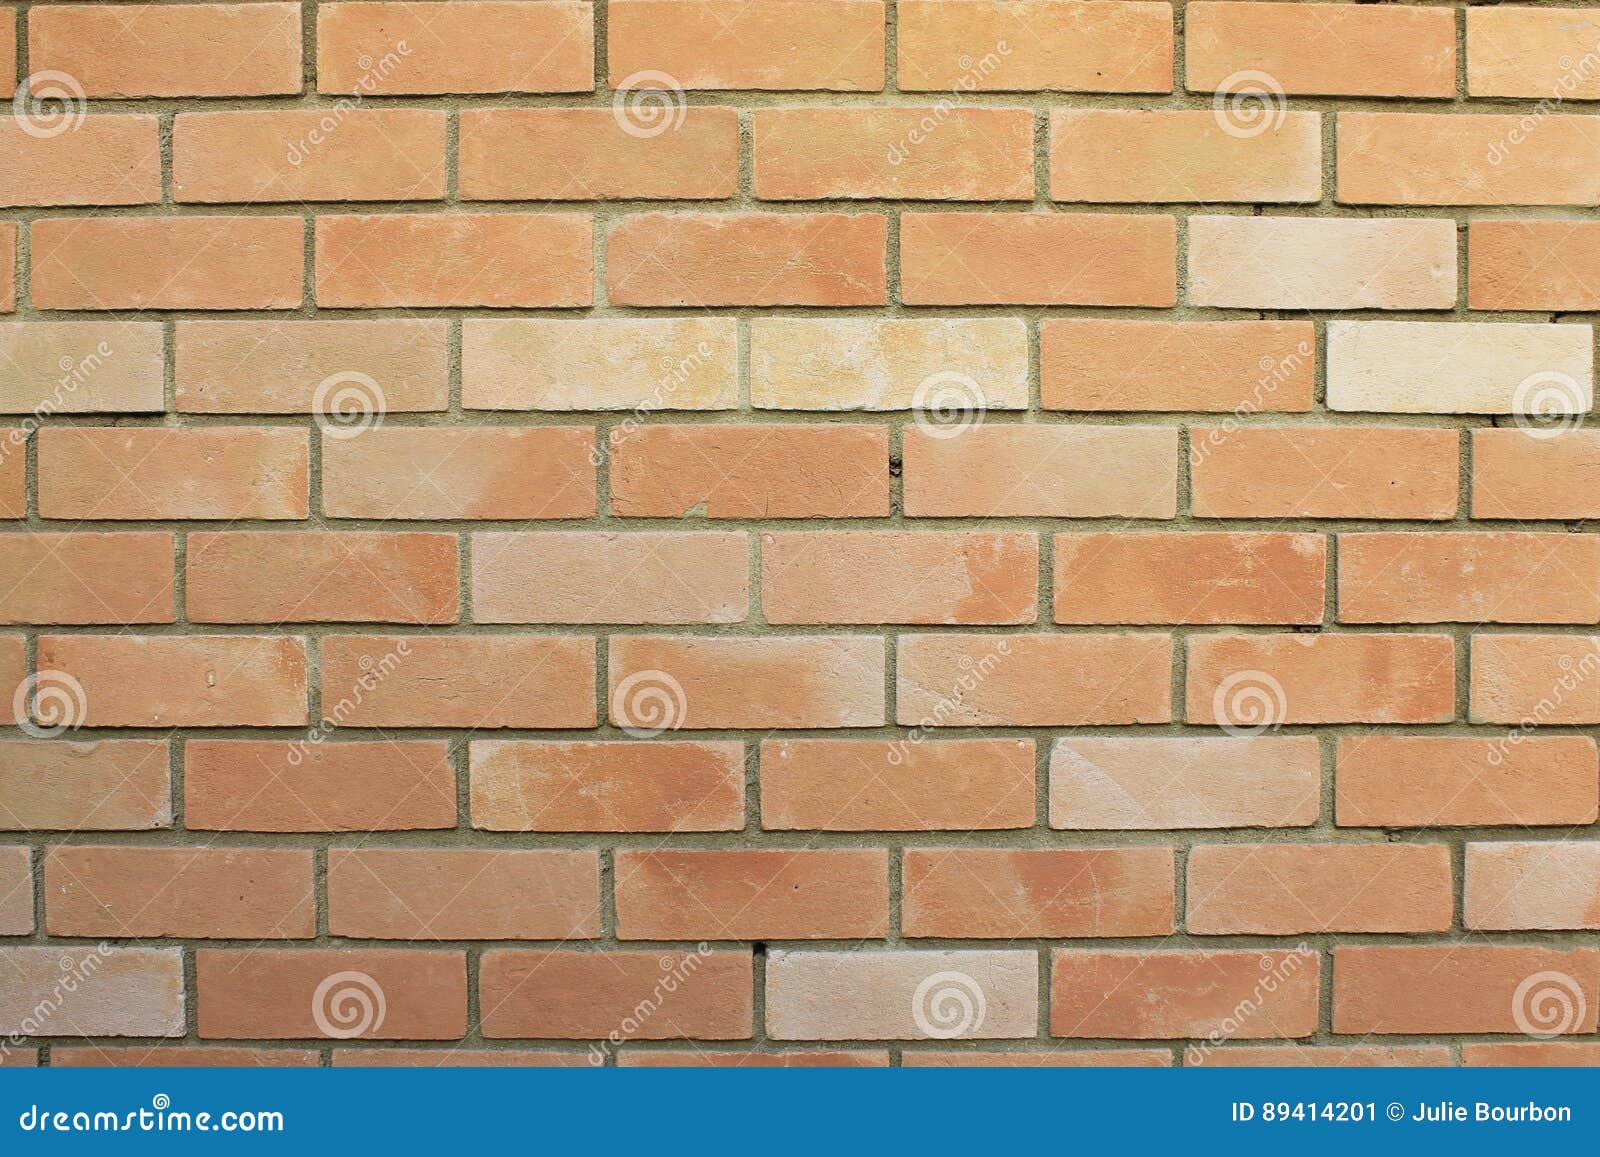 brick wall, wall with bricks